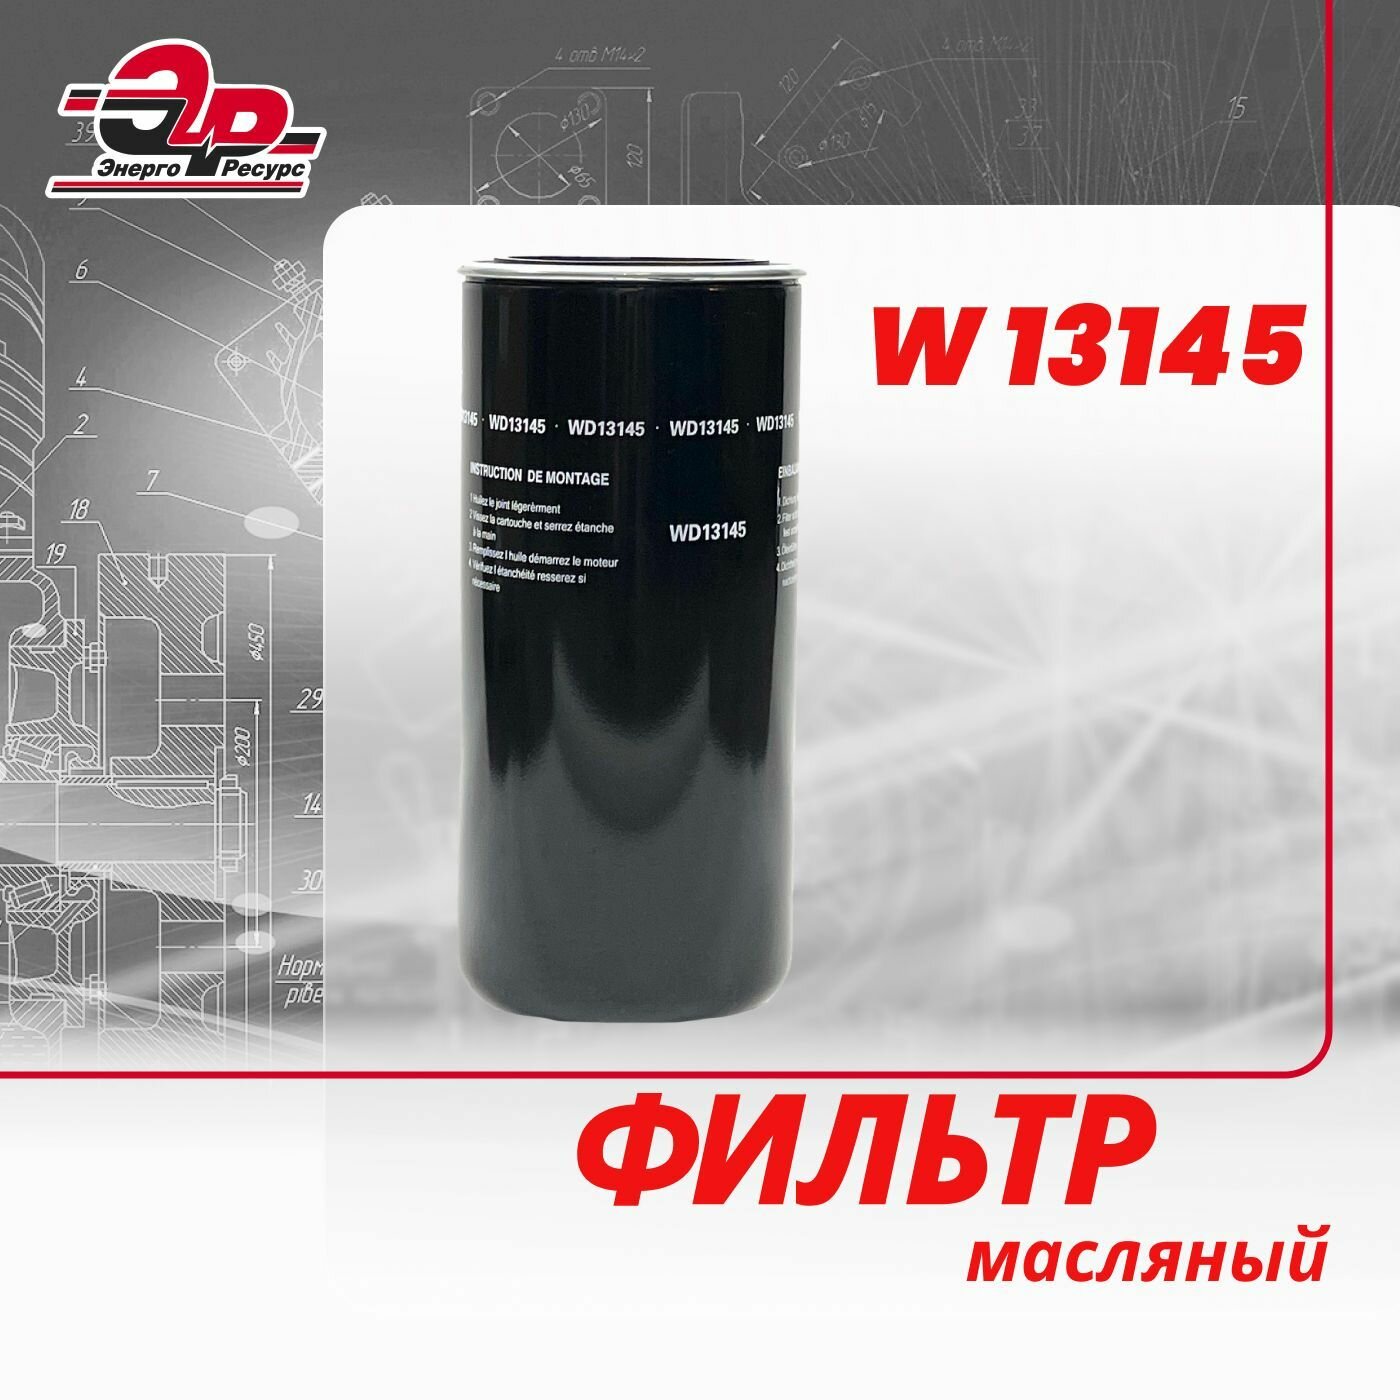 Фильтр масляный W 13145 для винтового компрессора